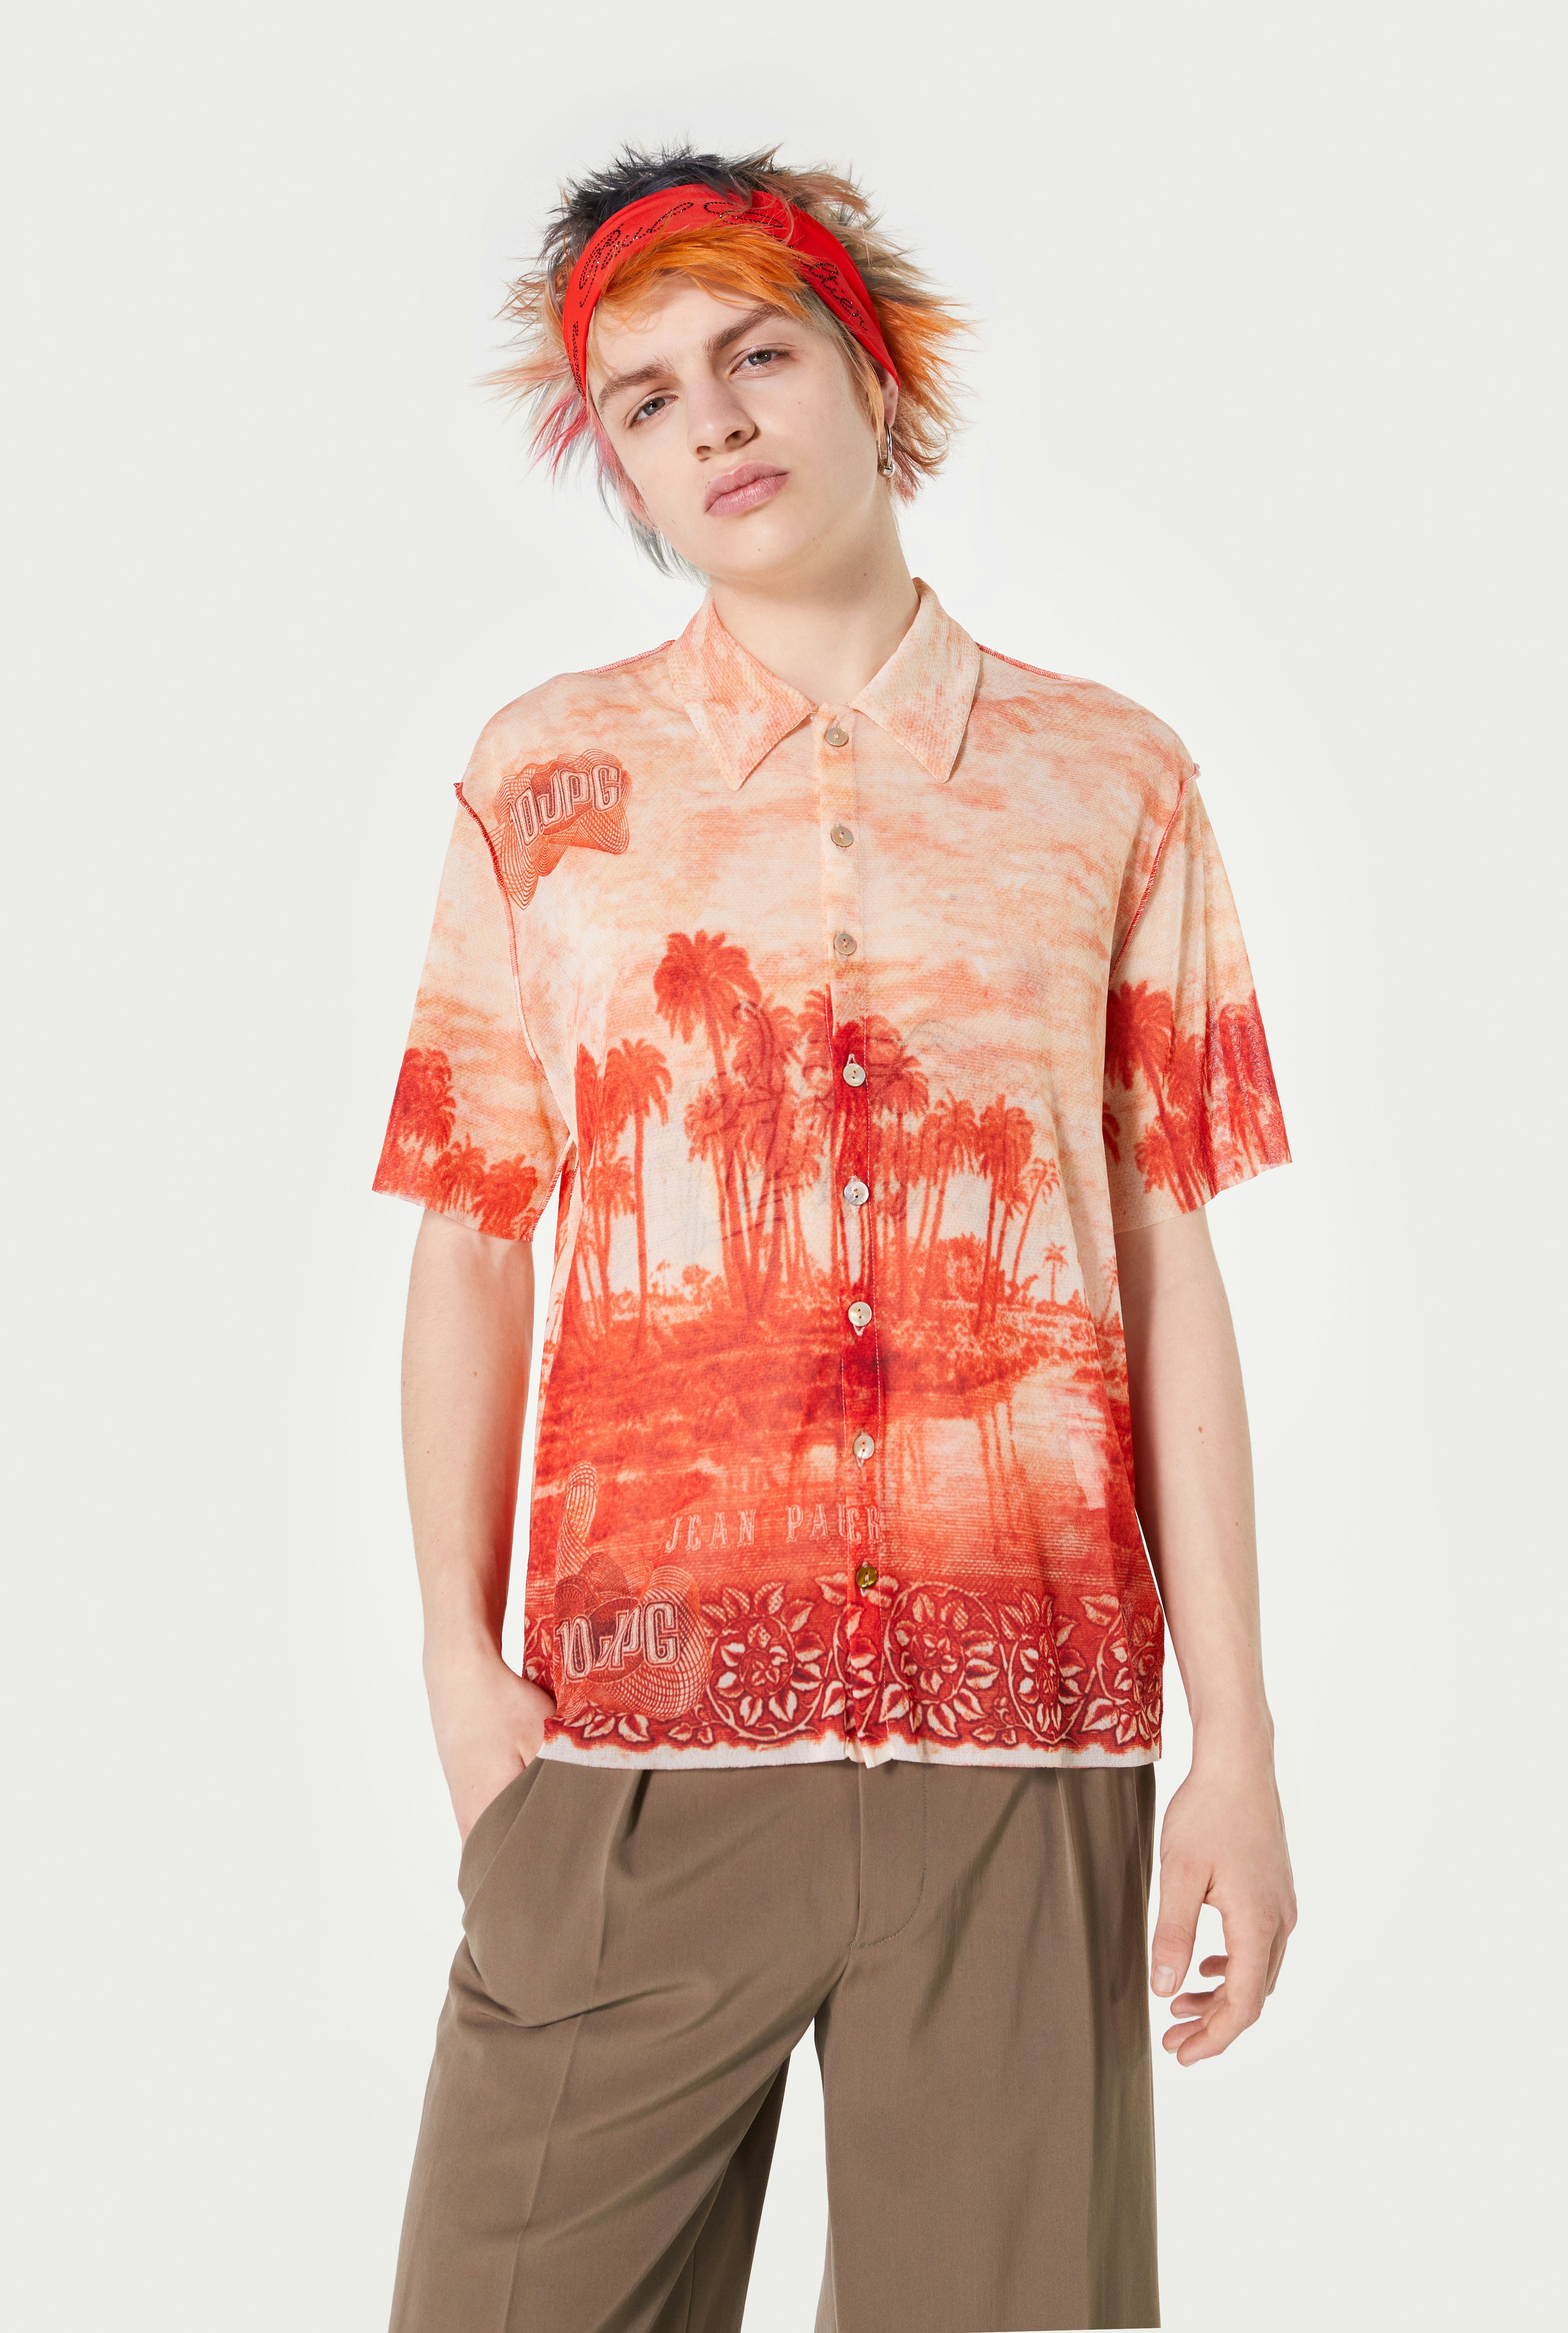 The Palm Tree Summer Shirt Jean Paul Gaultier